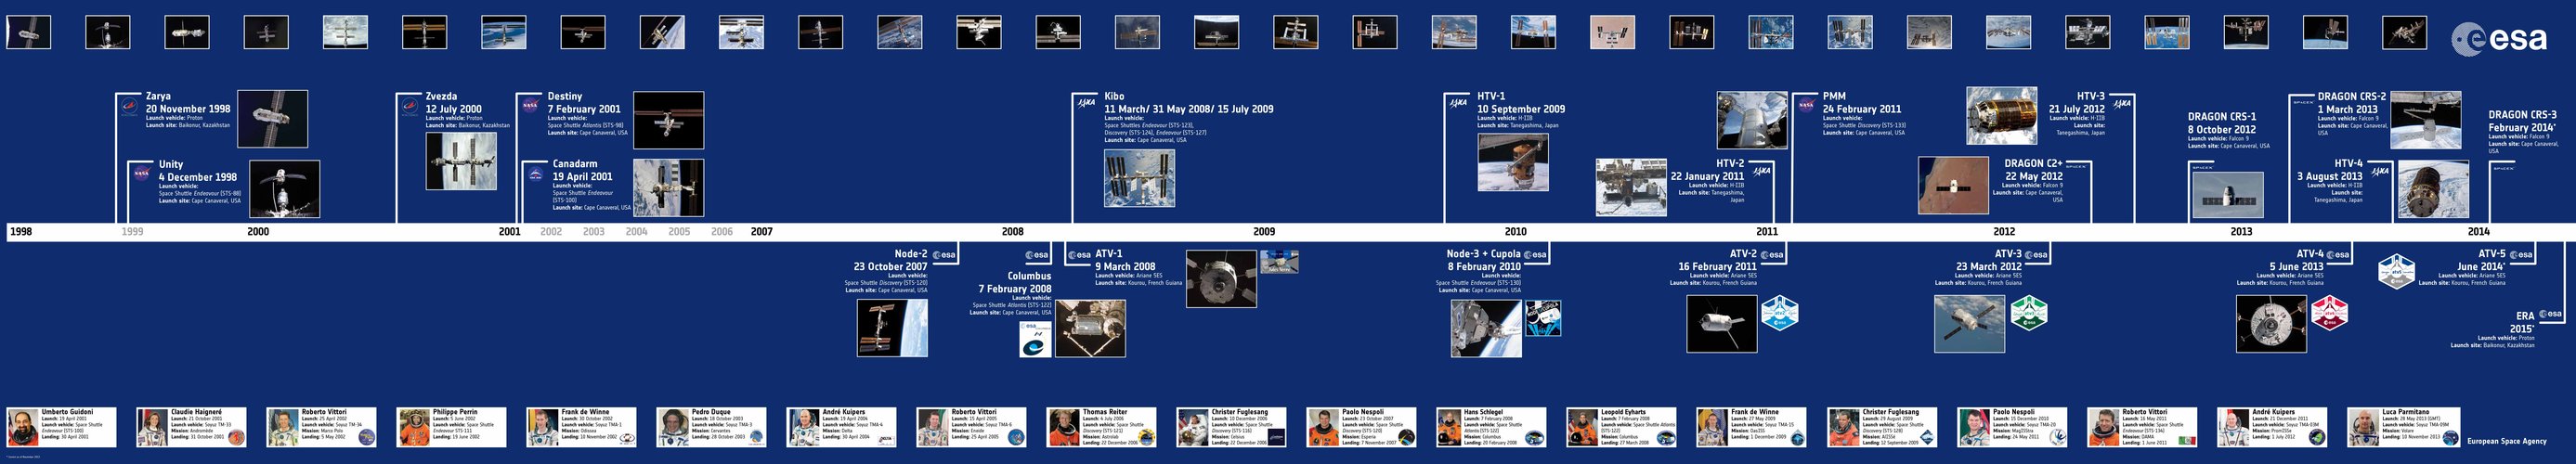 Space Station timeline